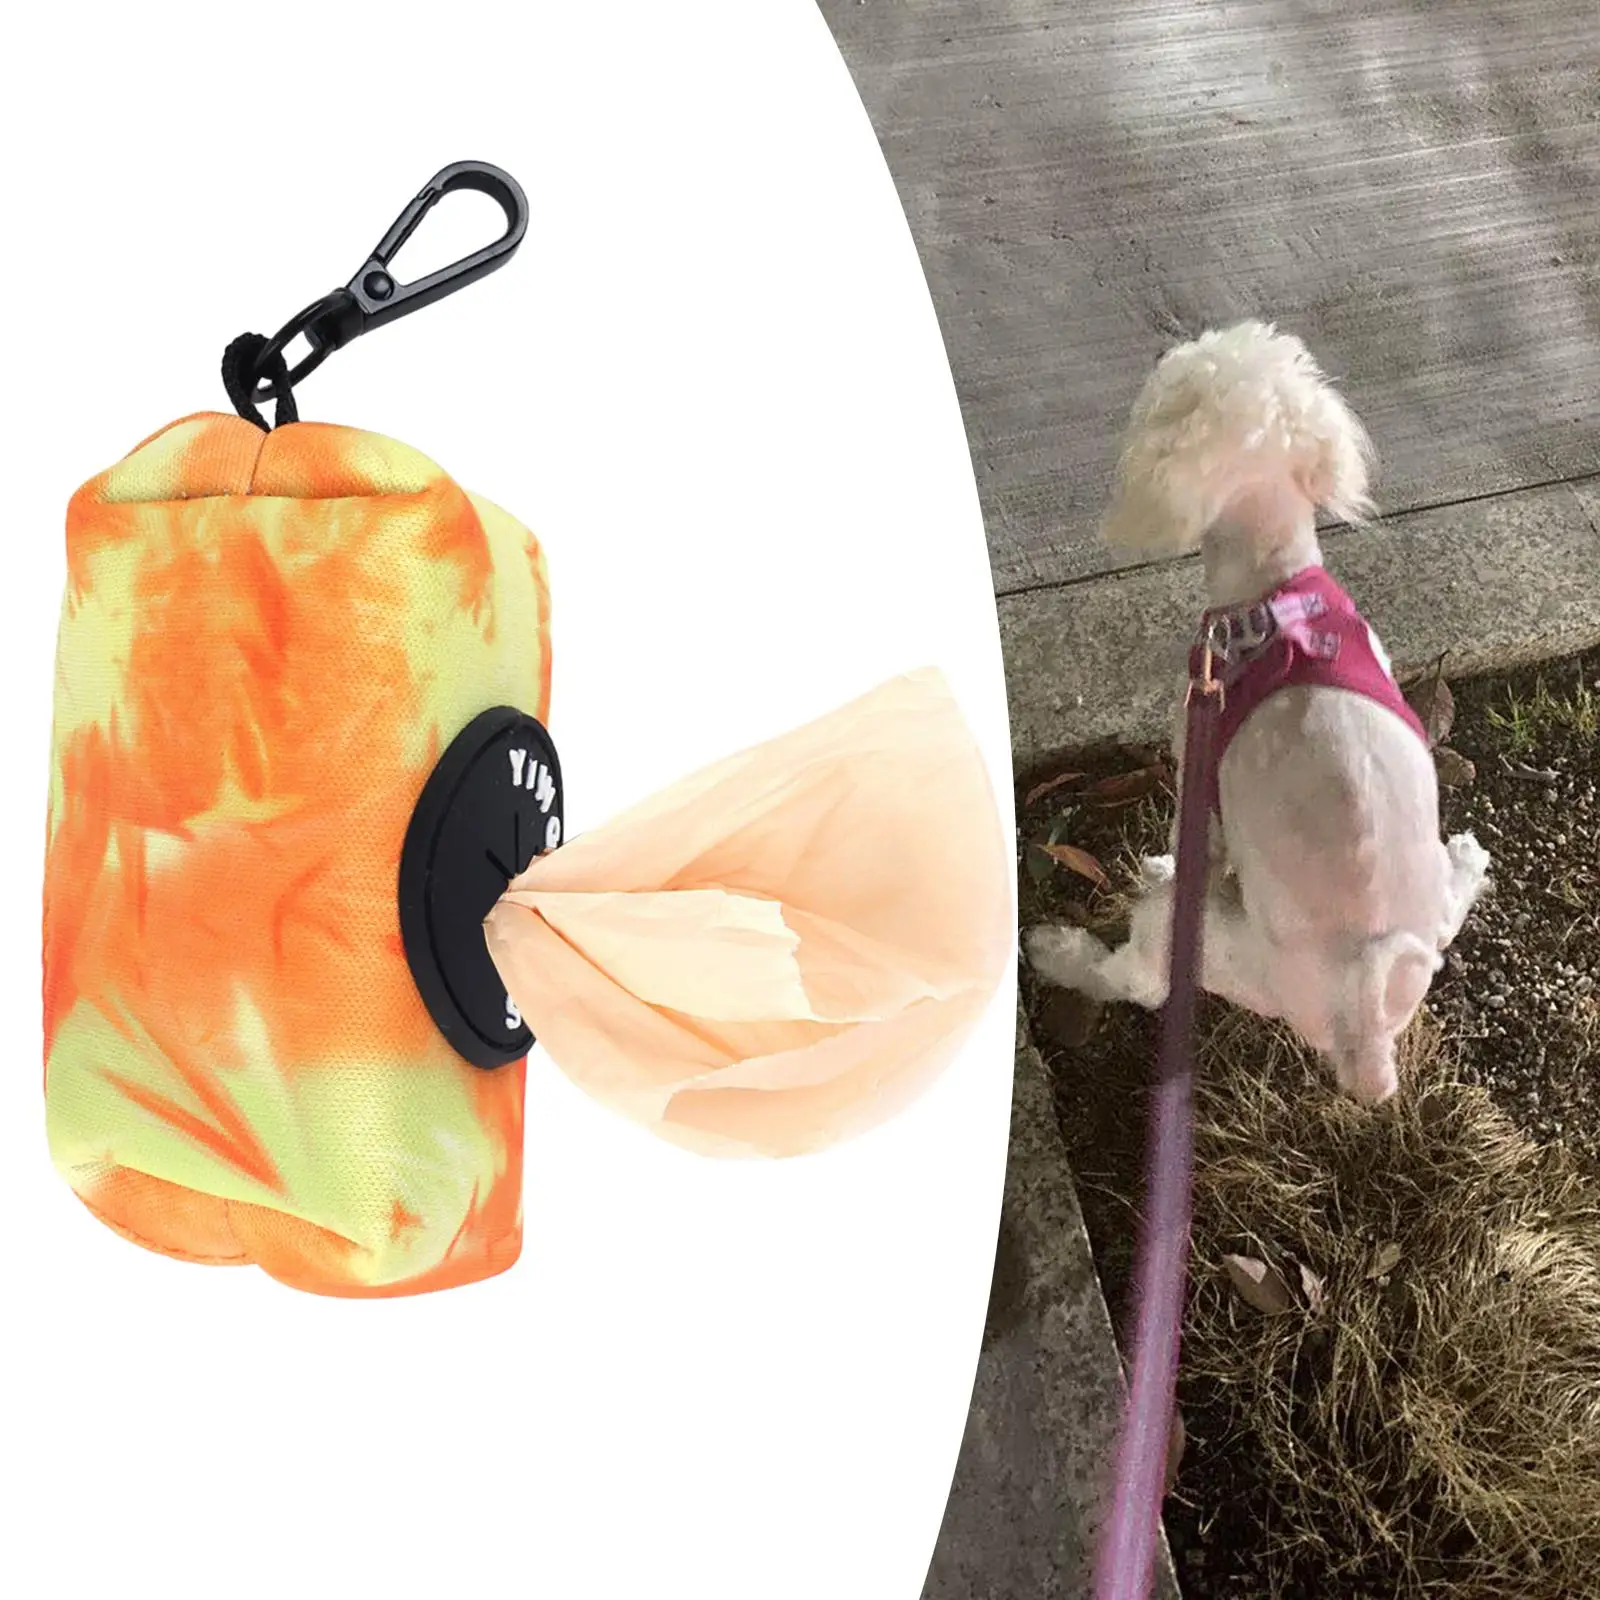 Pet Waste Bag Dispenser with Buckle Clip Bags Carrier Zipper Pickup Bag Carry Tube Dog Poop Bag Holder for Parks Travel Walking